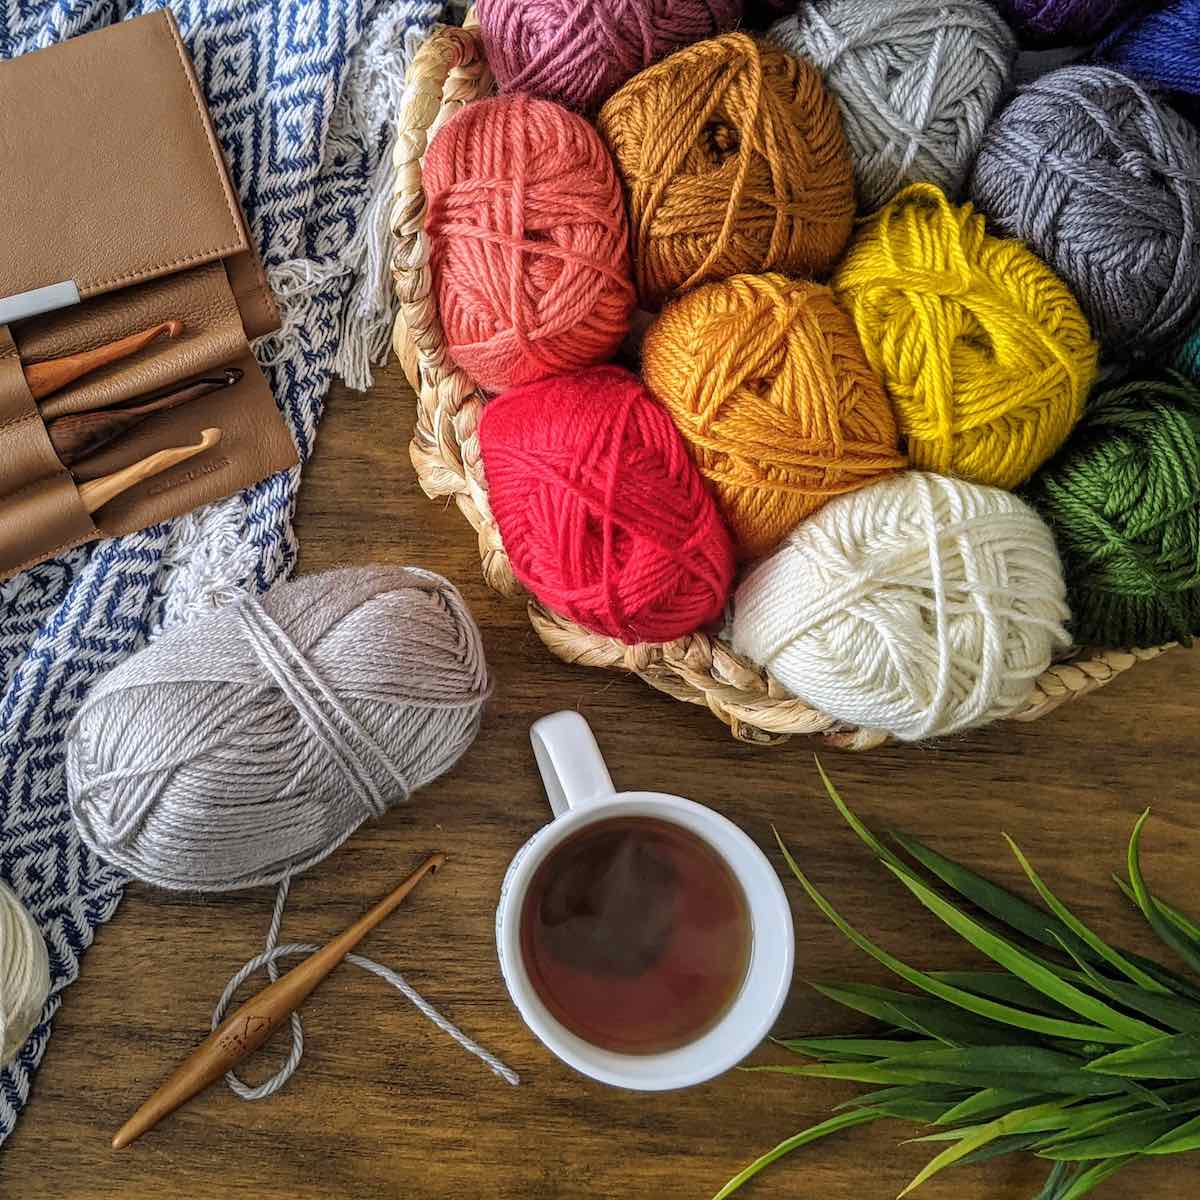 Streamline Wood Crochet Hooks: Ergonomic & Affordable